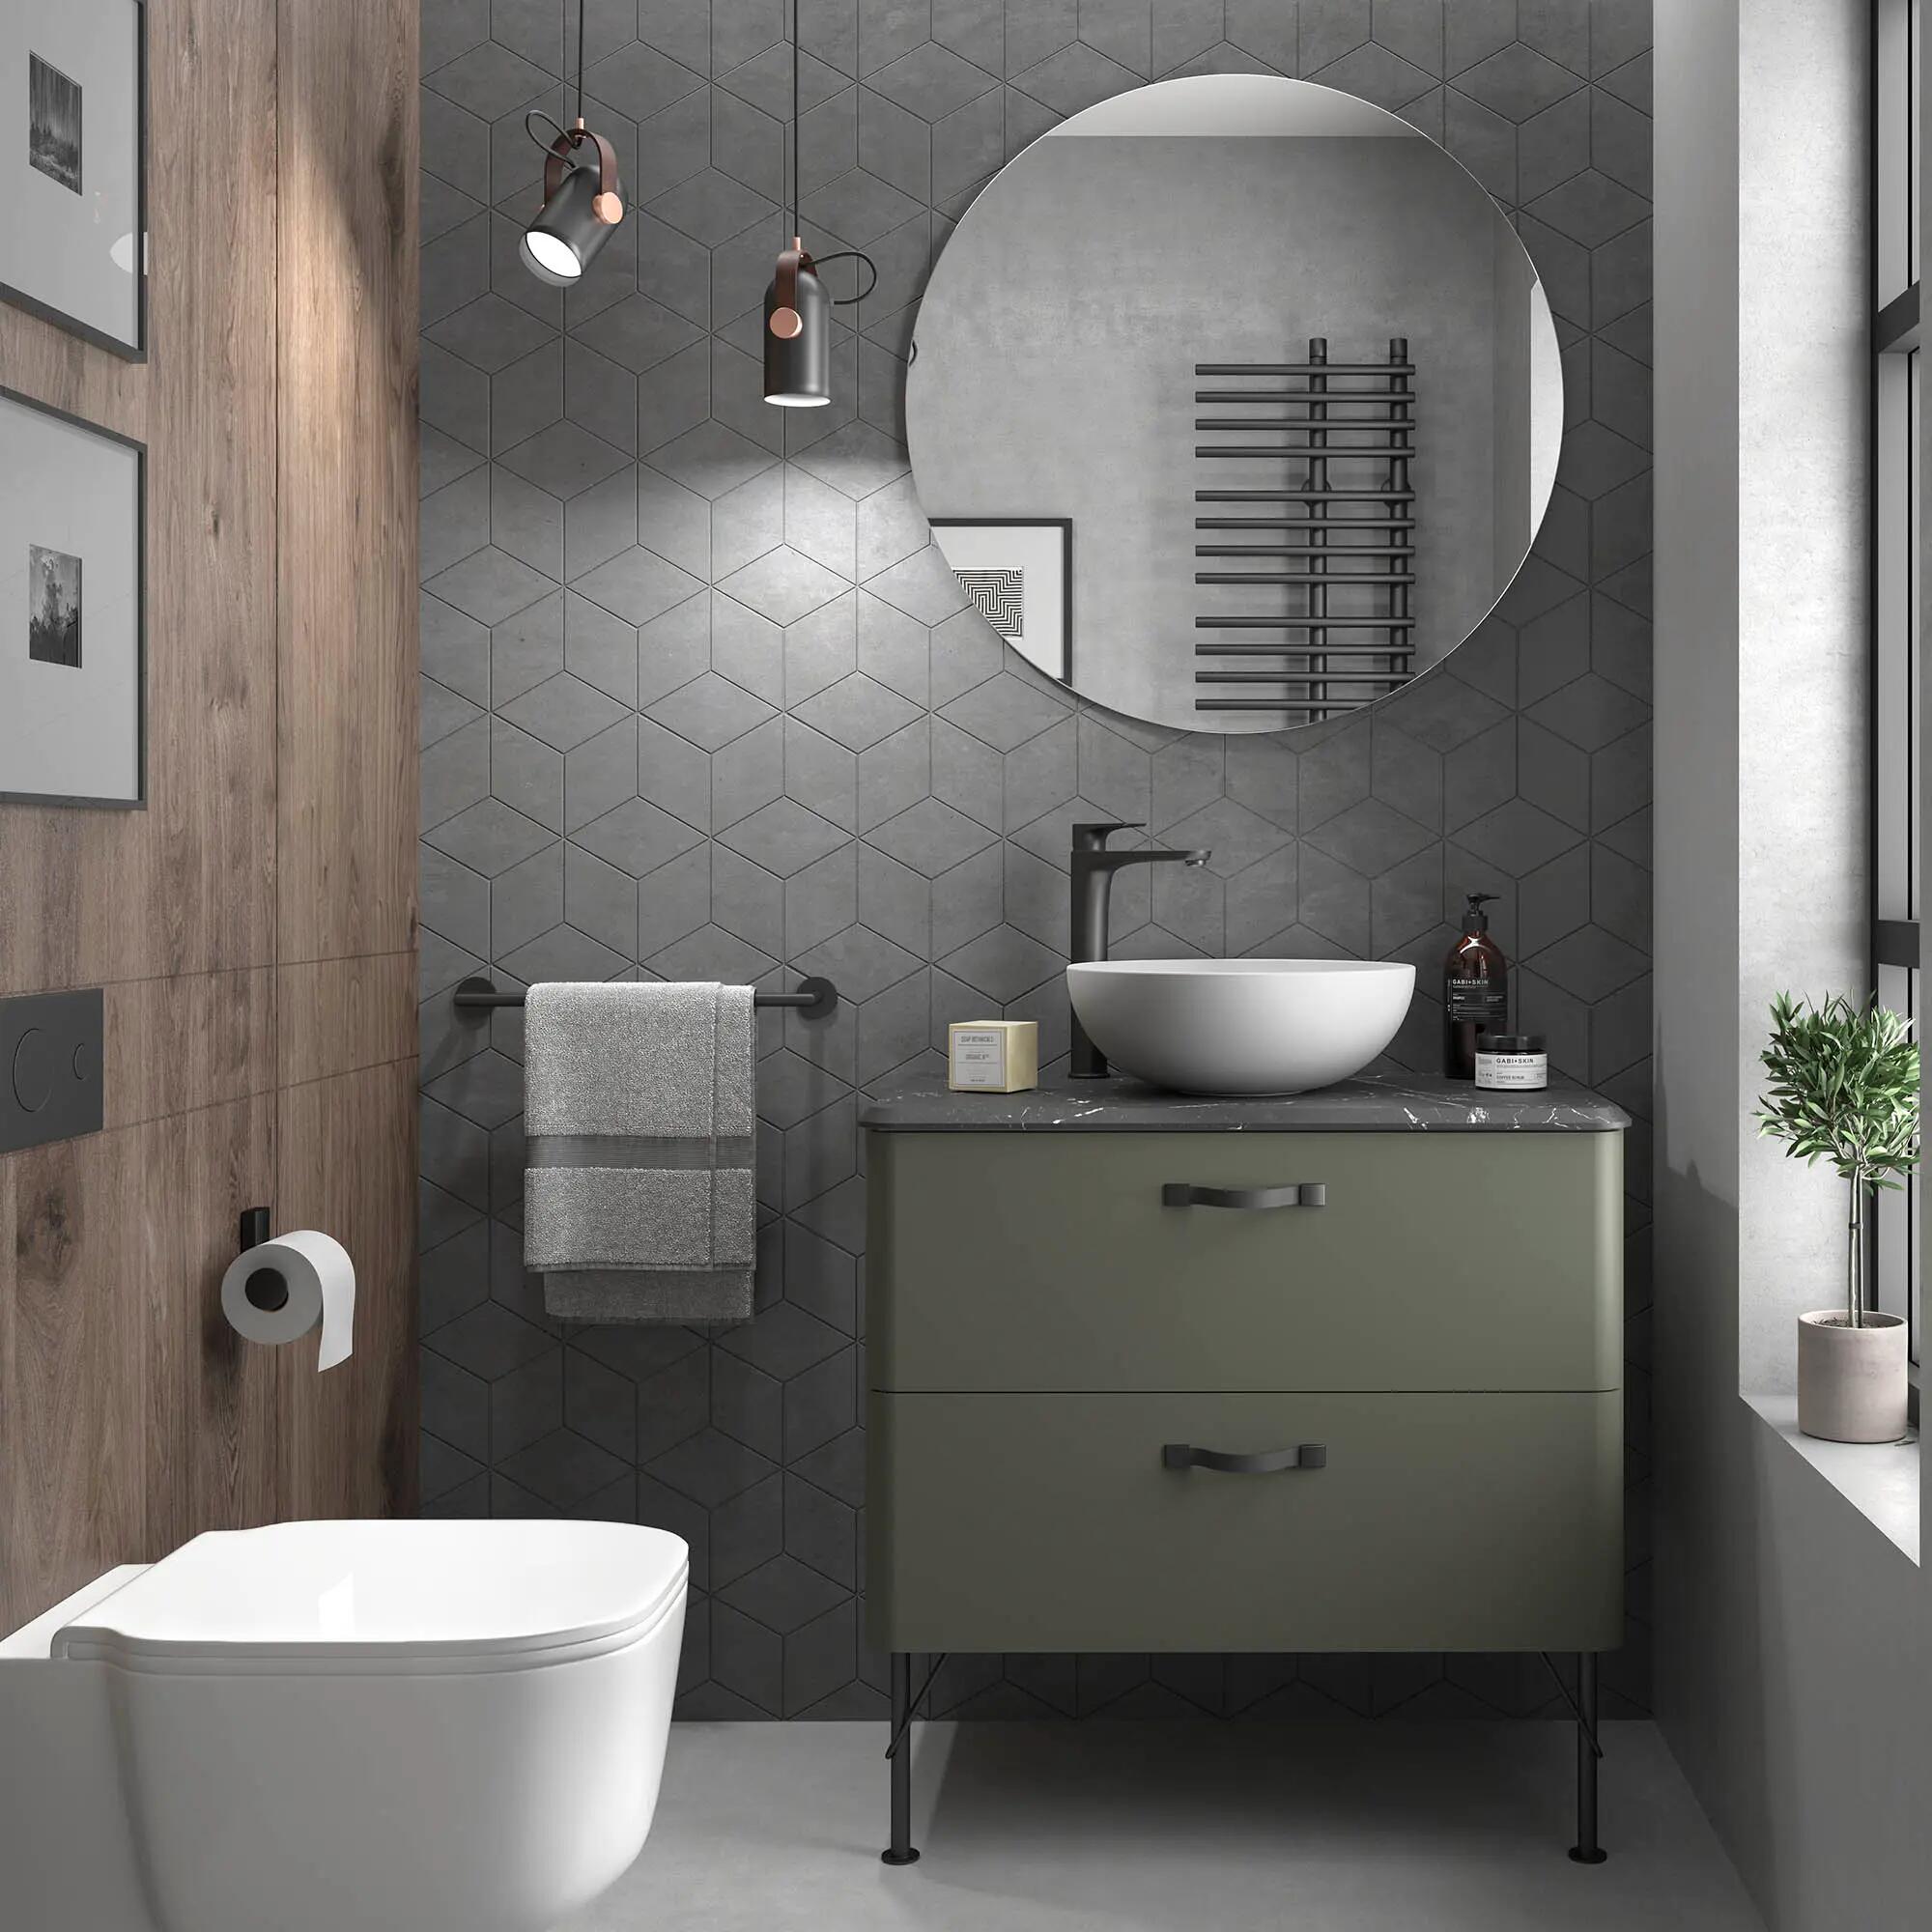 ▷ 1001 + Ideas de muebles de baño modernos espectaculares  Muebles para  baños modernos, Muebles baño moderno, Muebles de baño